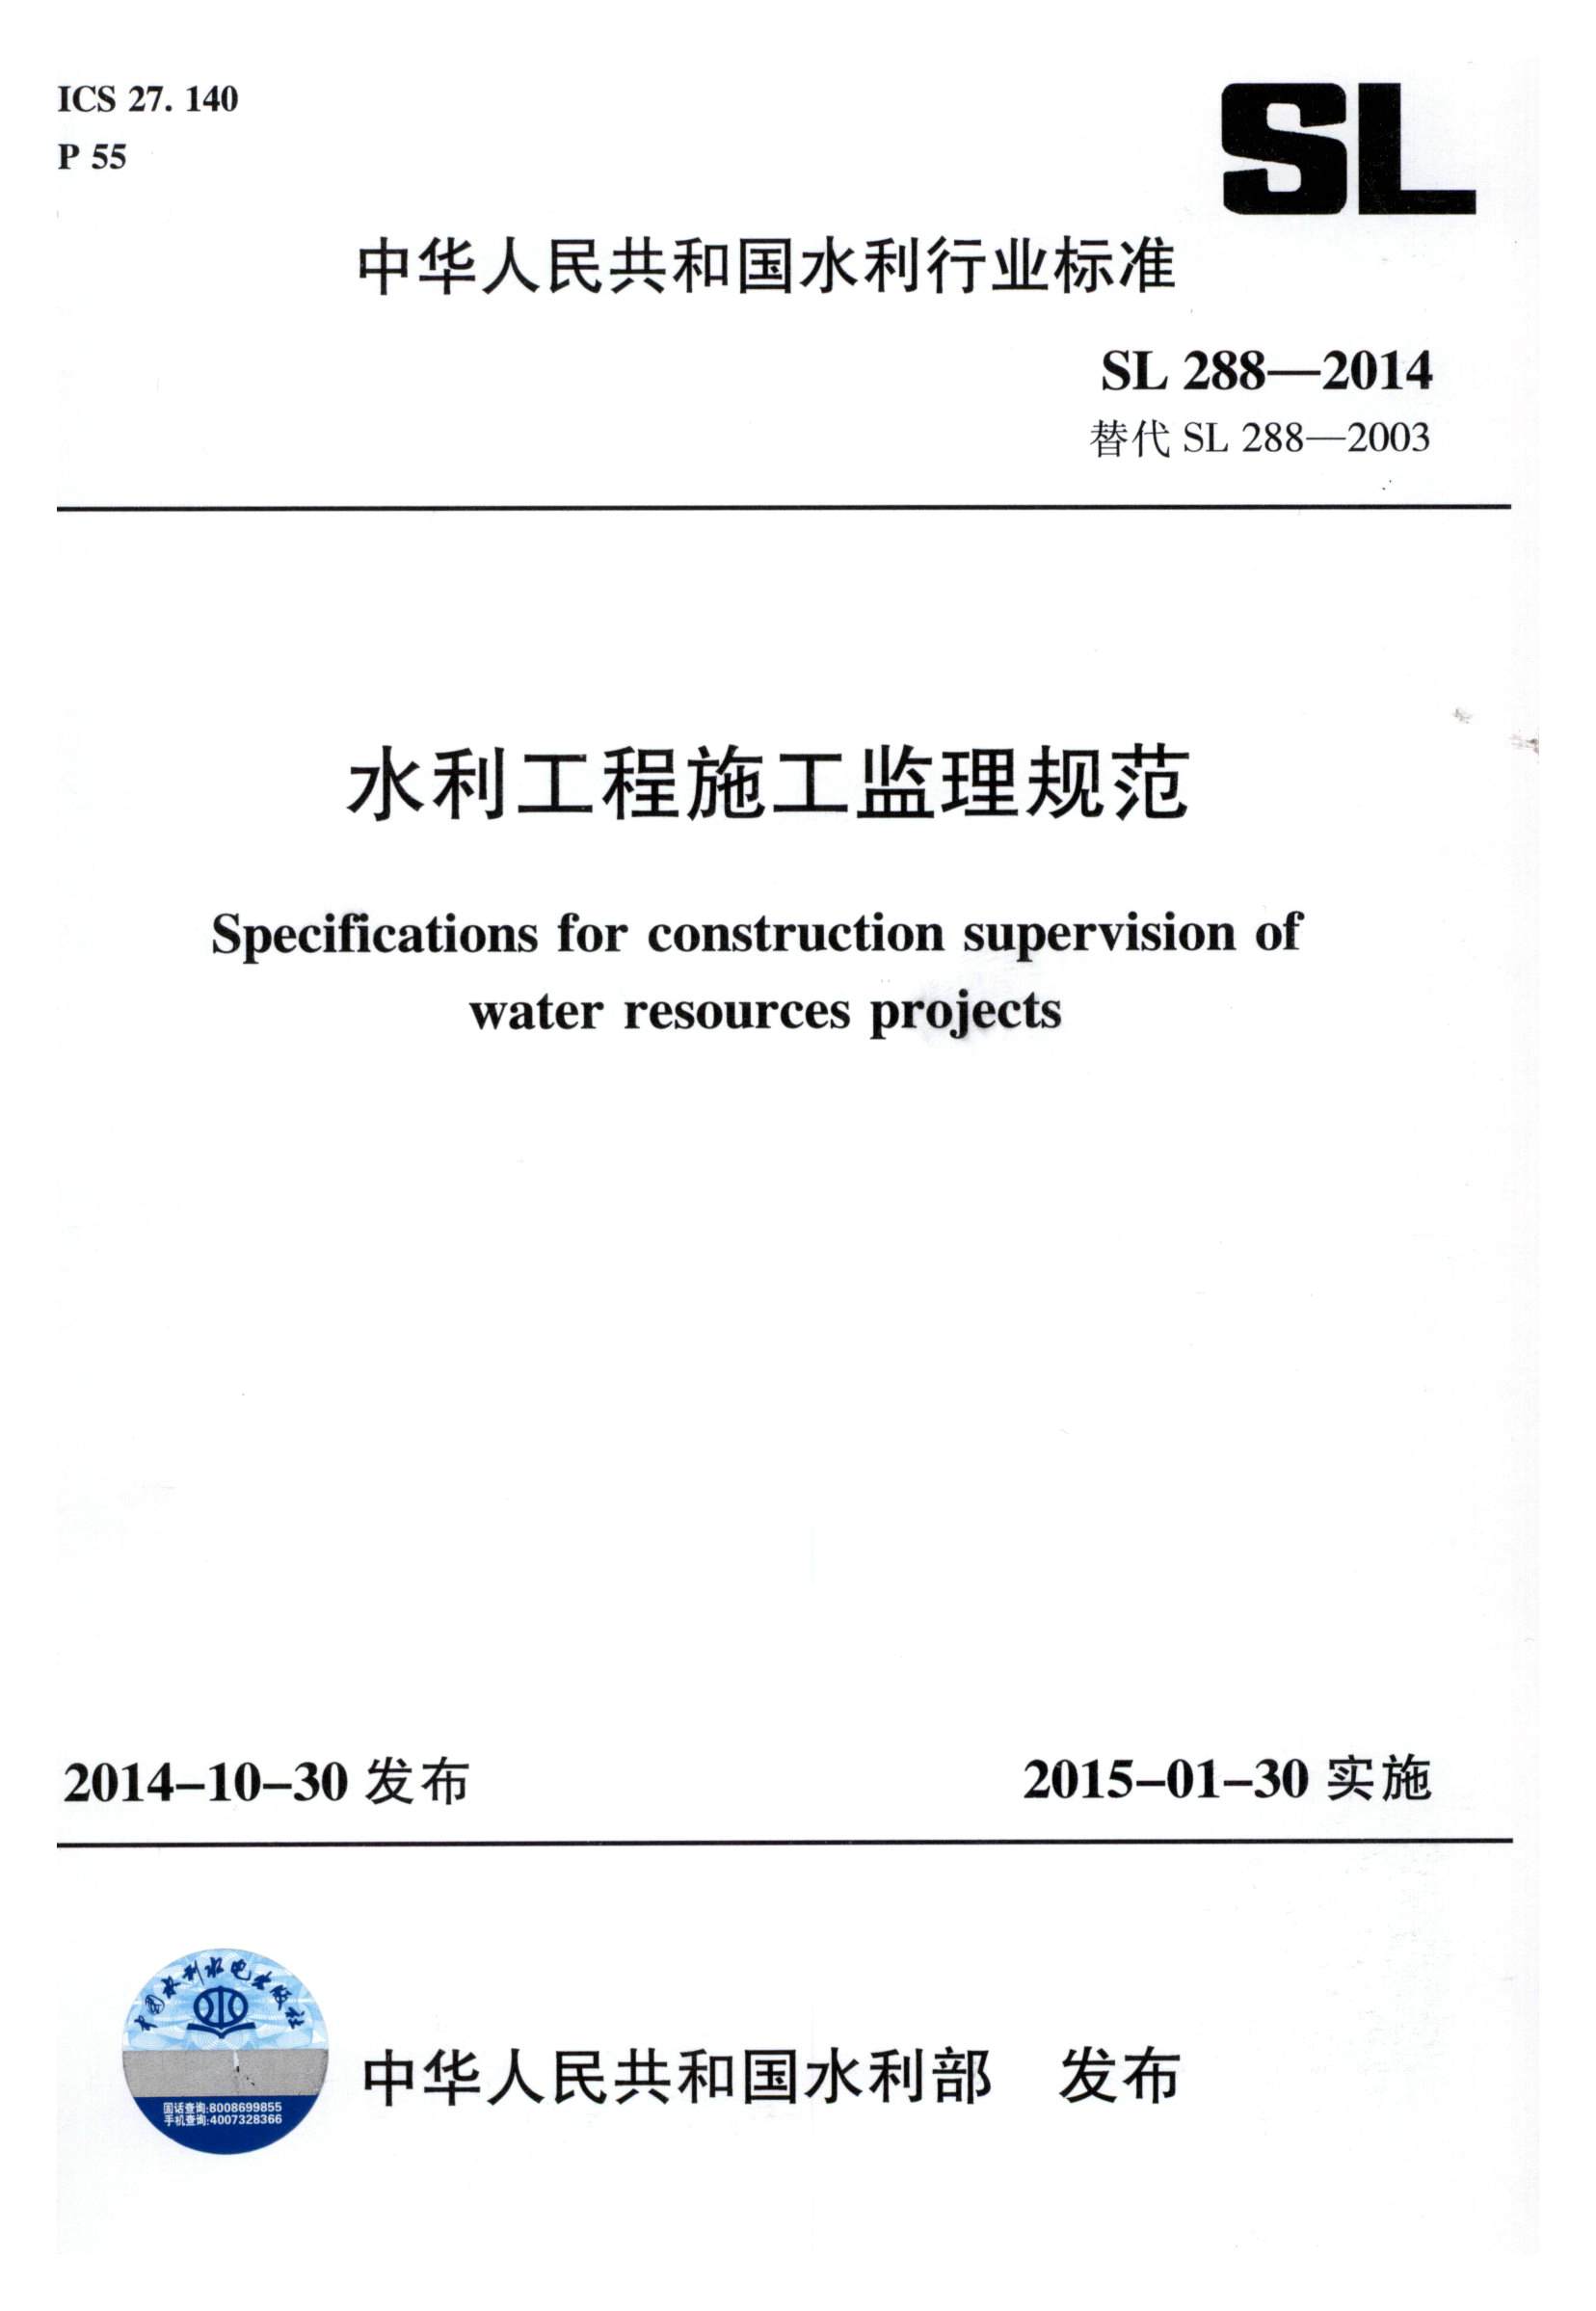 水利工程施工监理规范（SL 288-2014）_页面_001.jpg